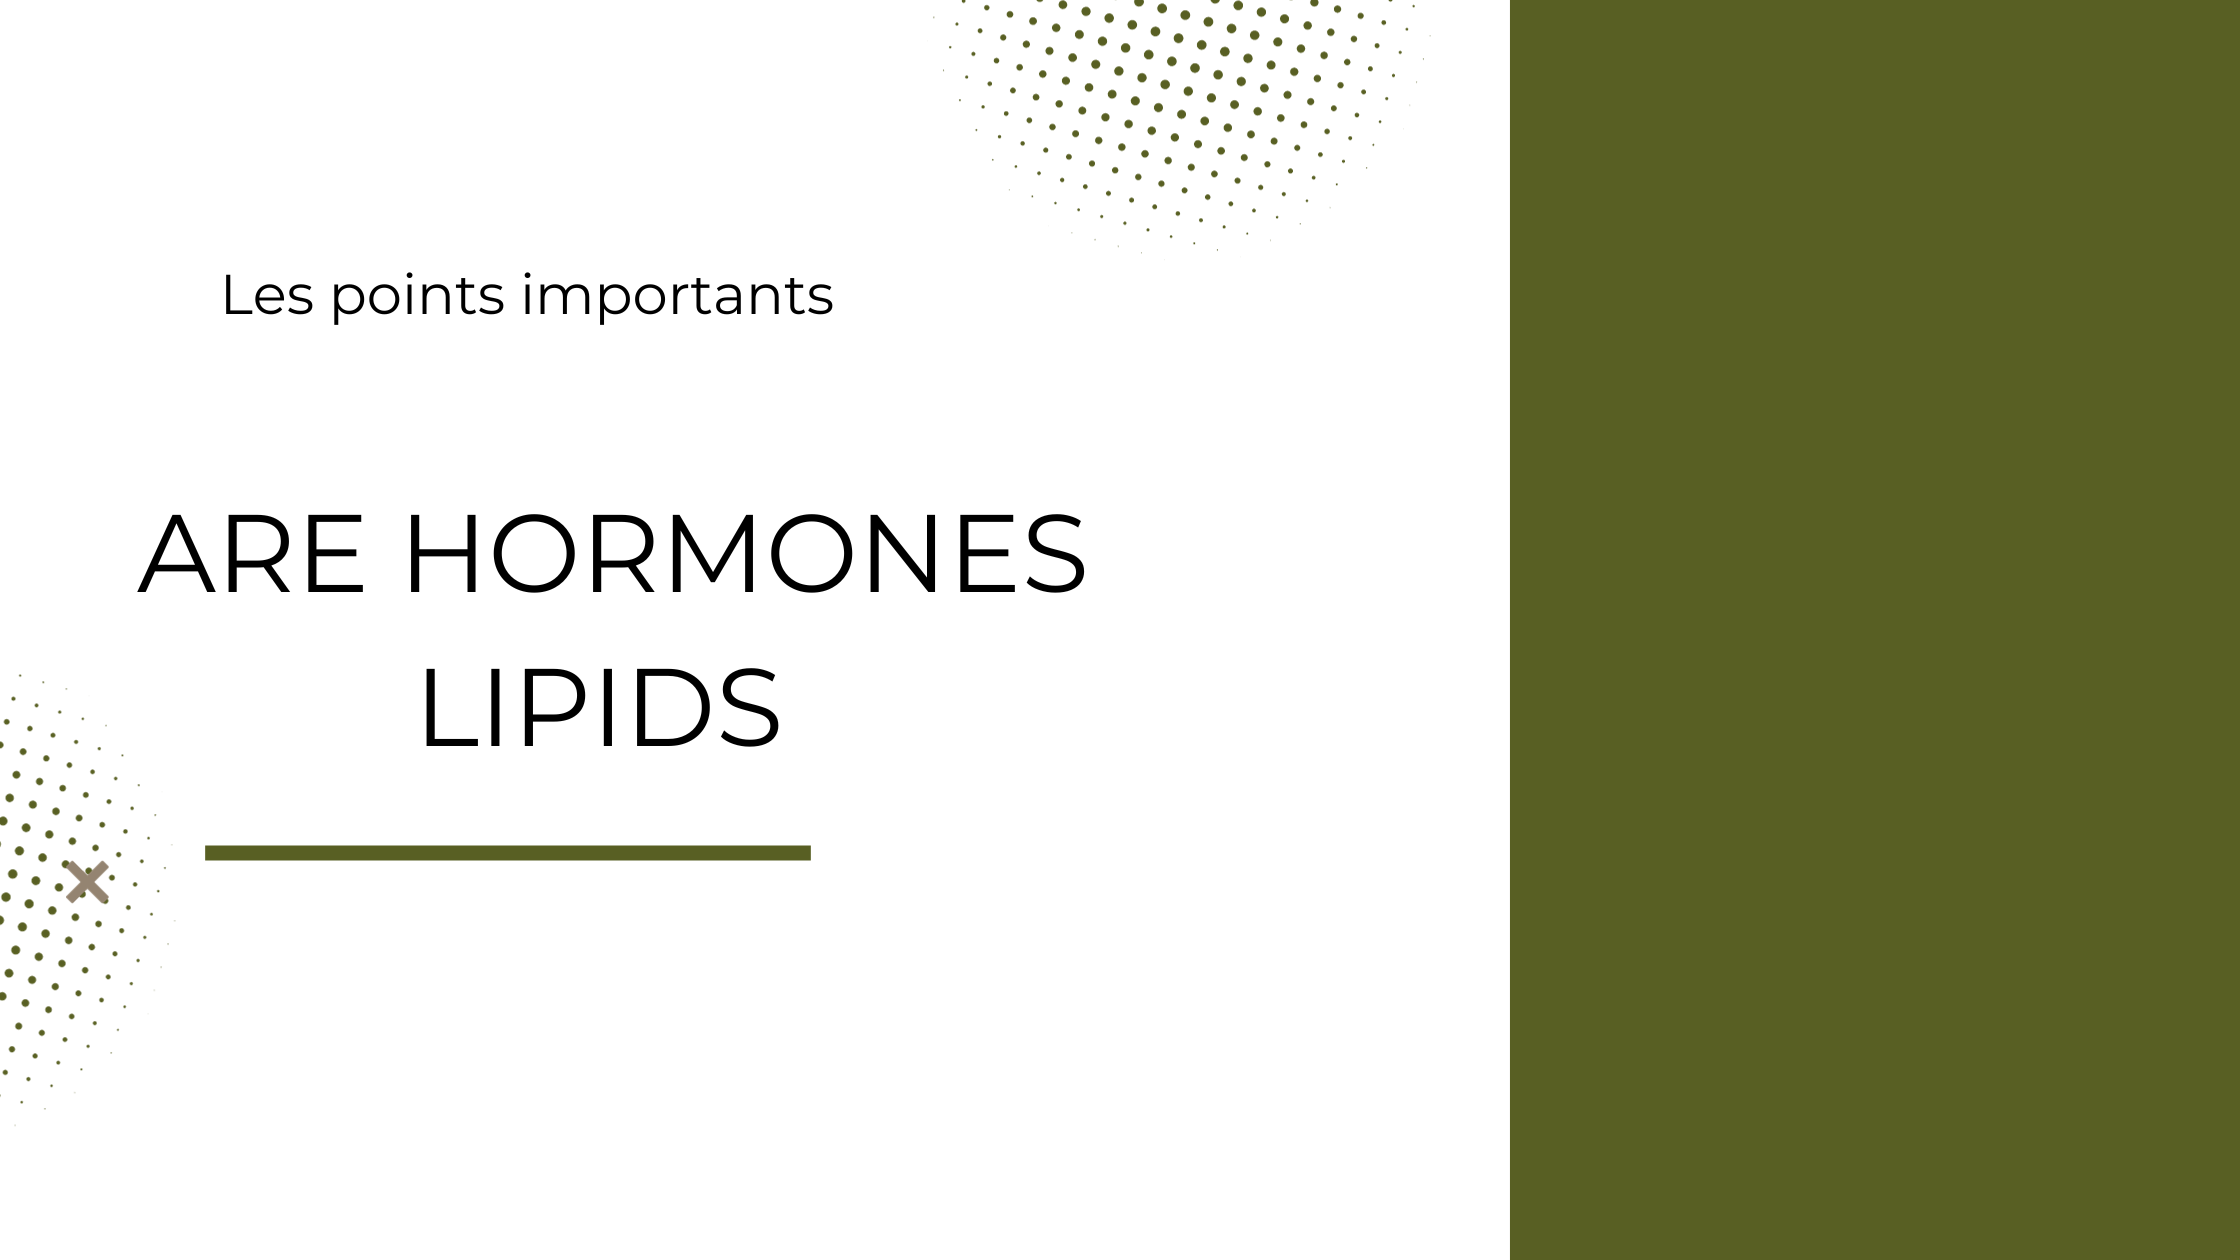 are hormones lipids | Les points importants